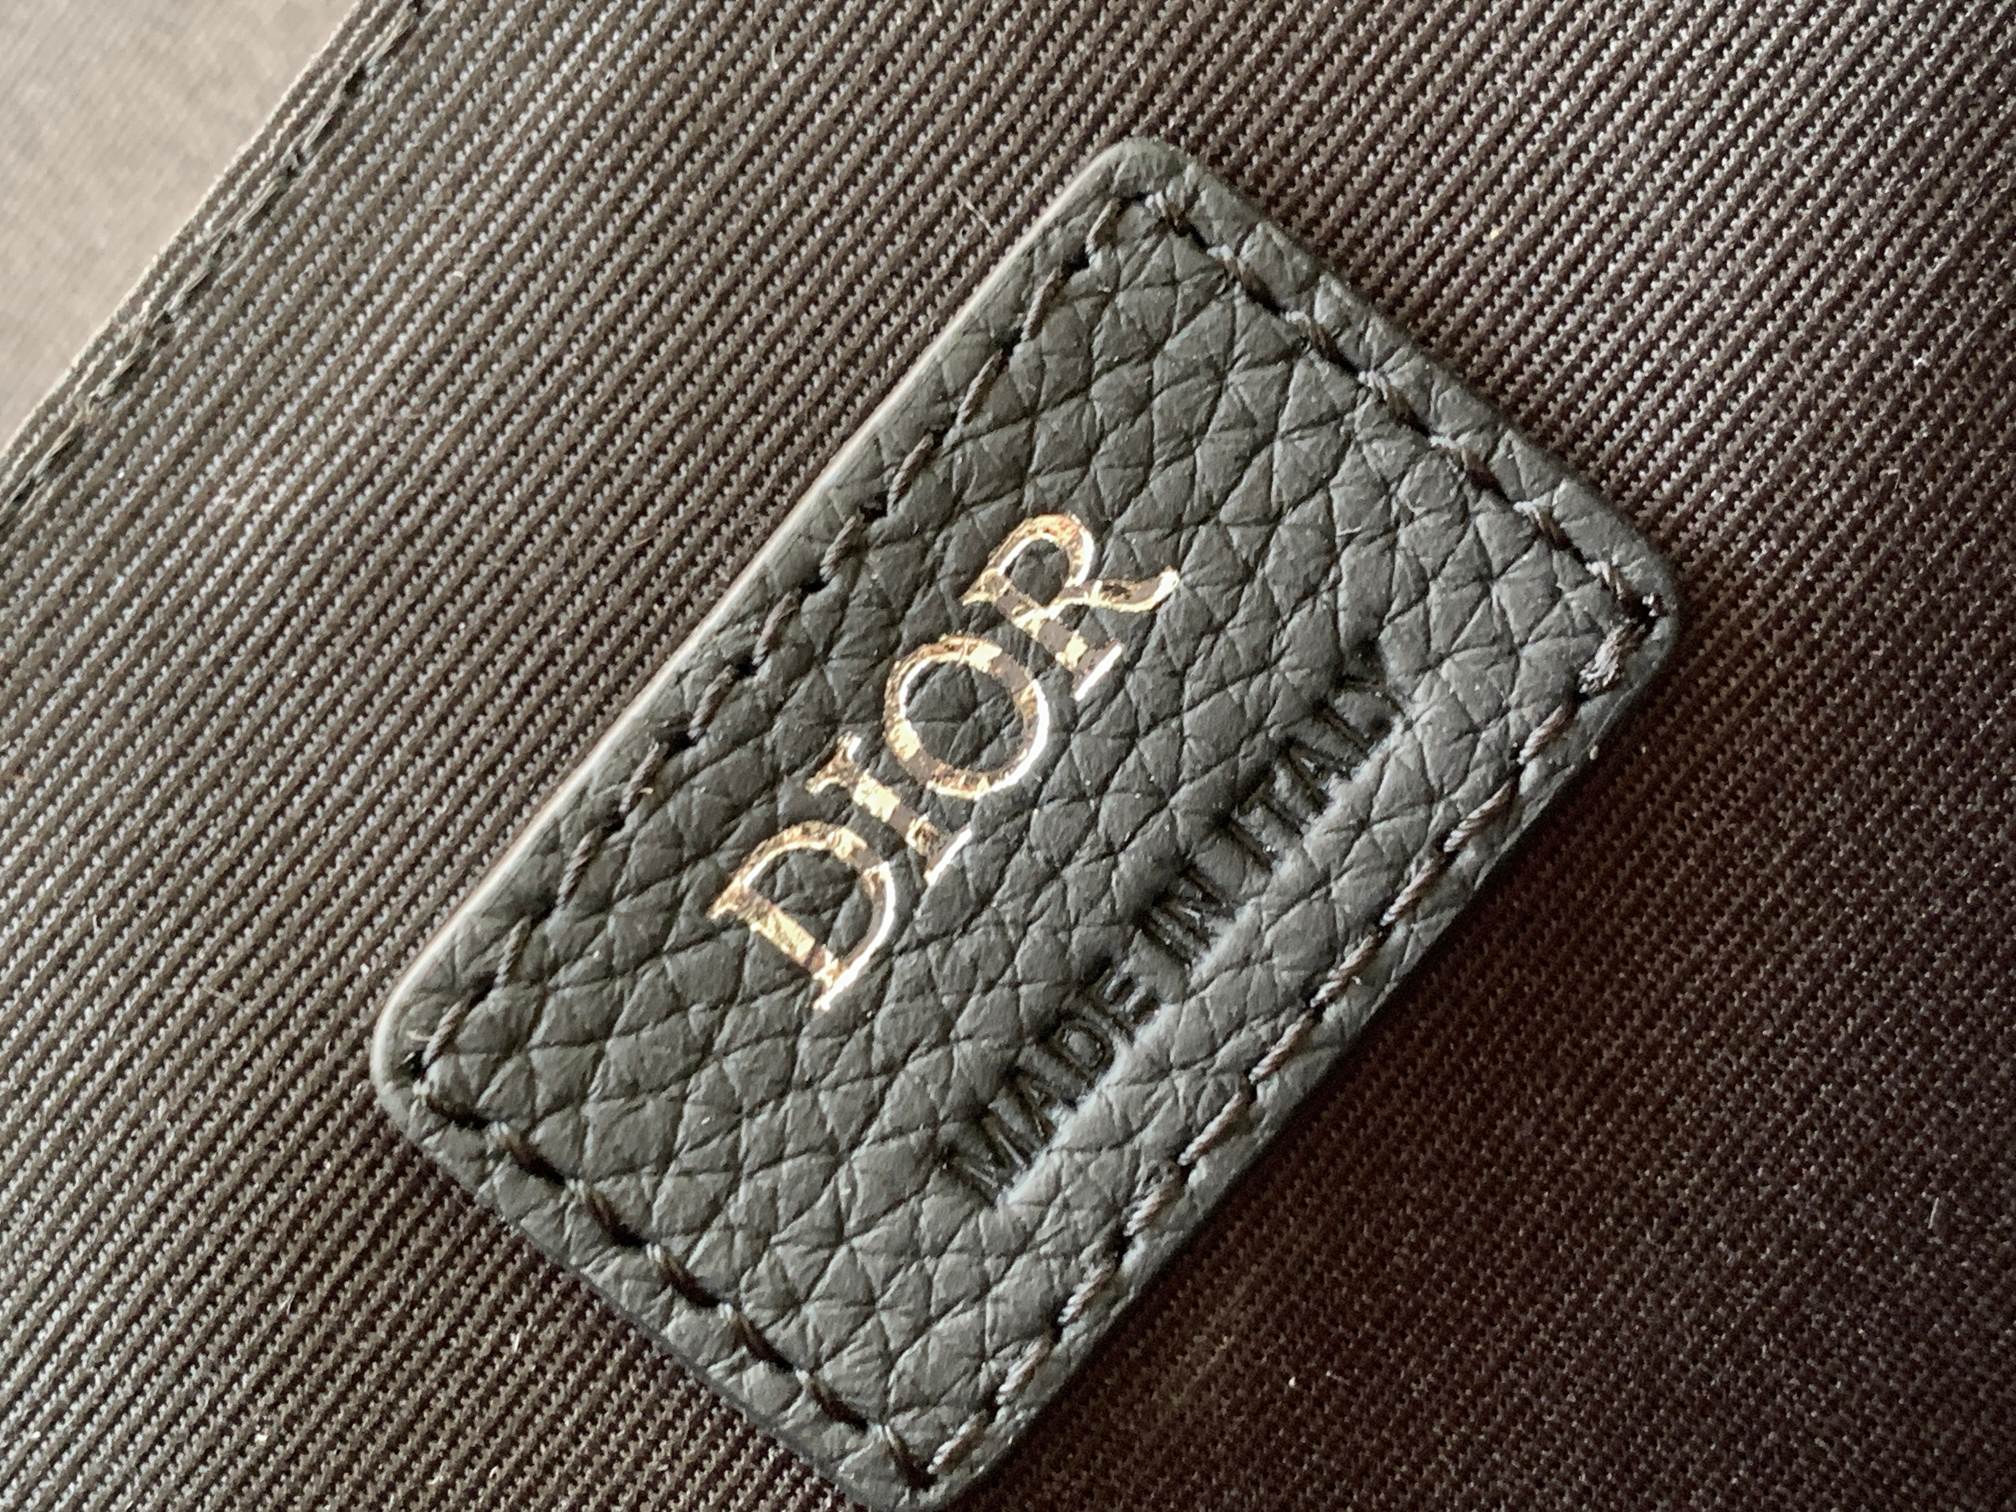 Replica Dior Hit the Road handbag